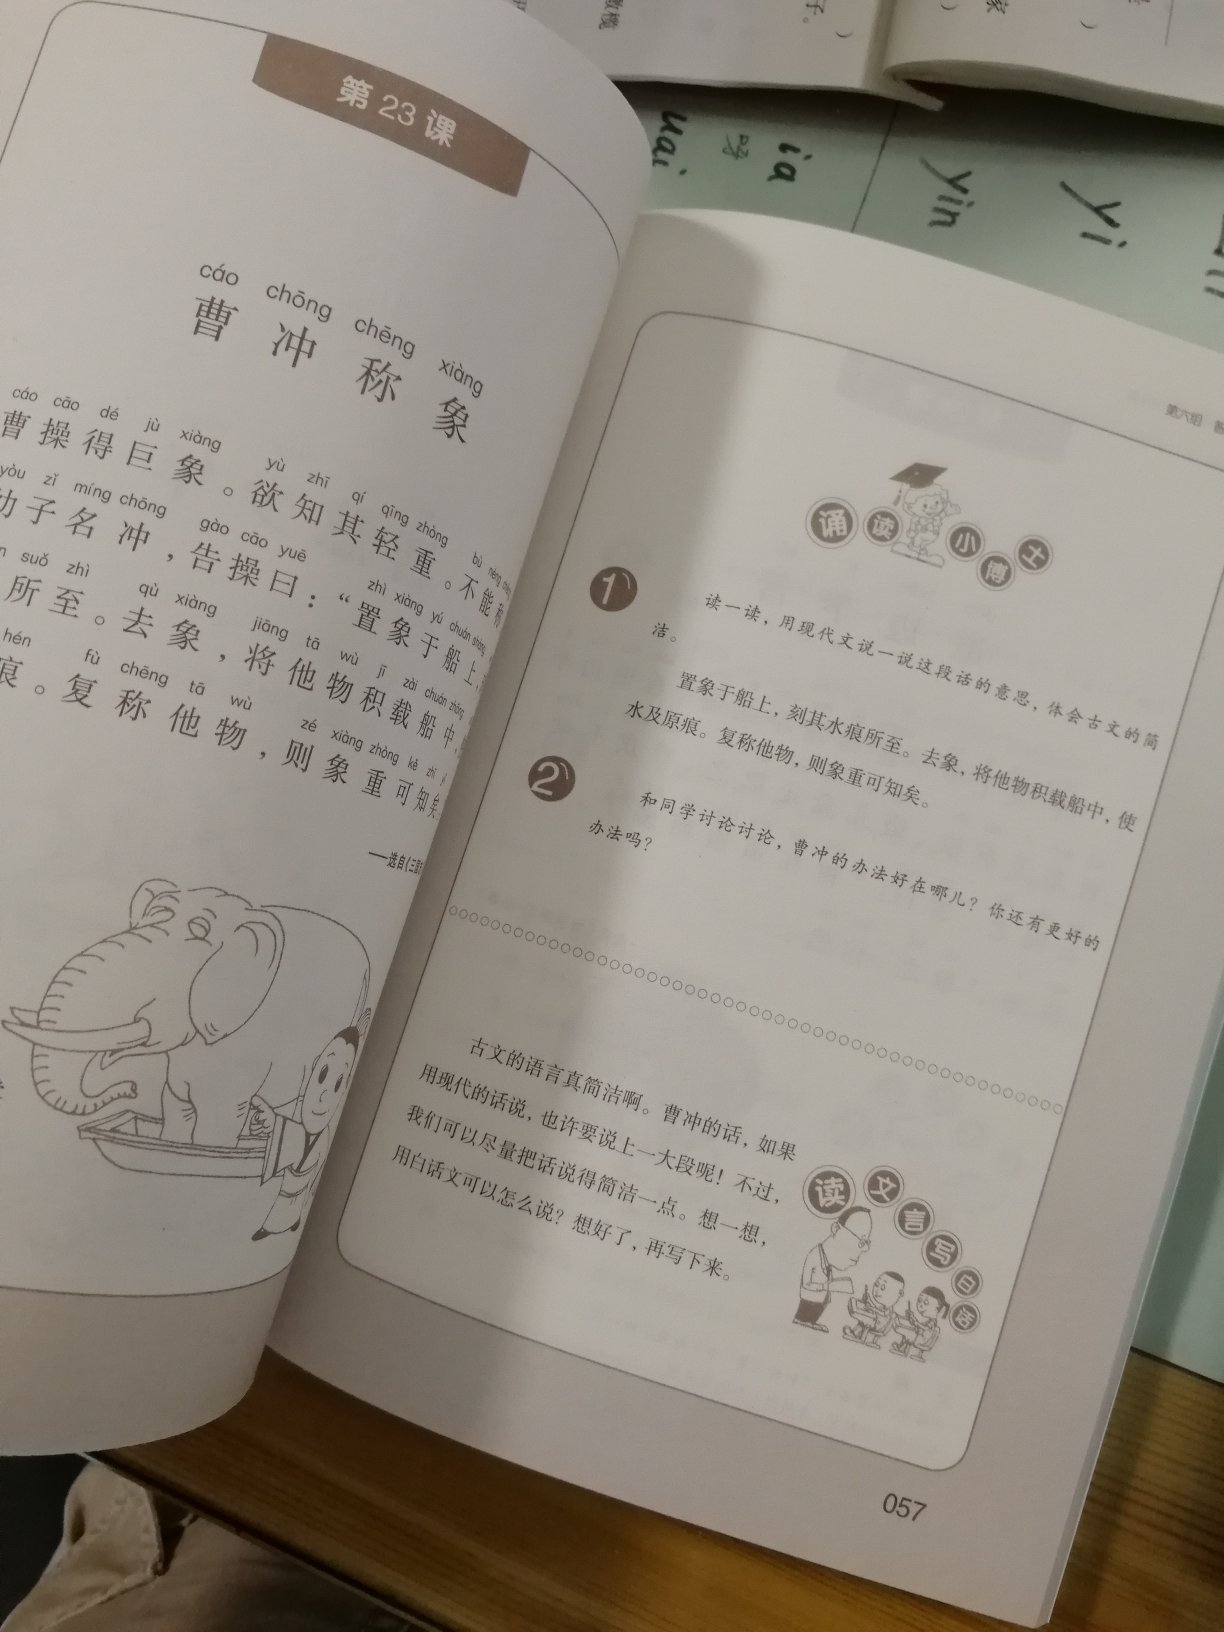 很好的一本书，现在以中文为主了，一定要抓好汉语基础，，，古文少不了的。。。。。。。。